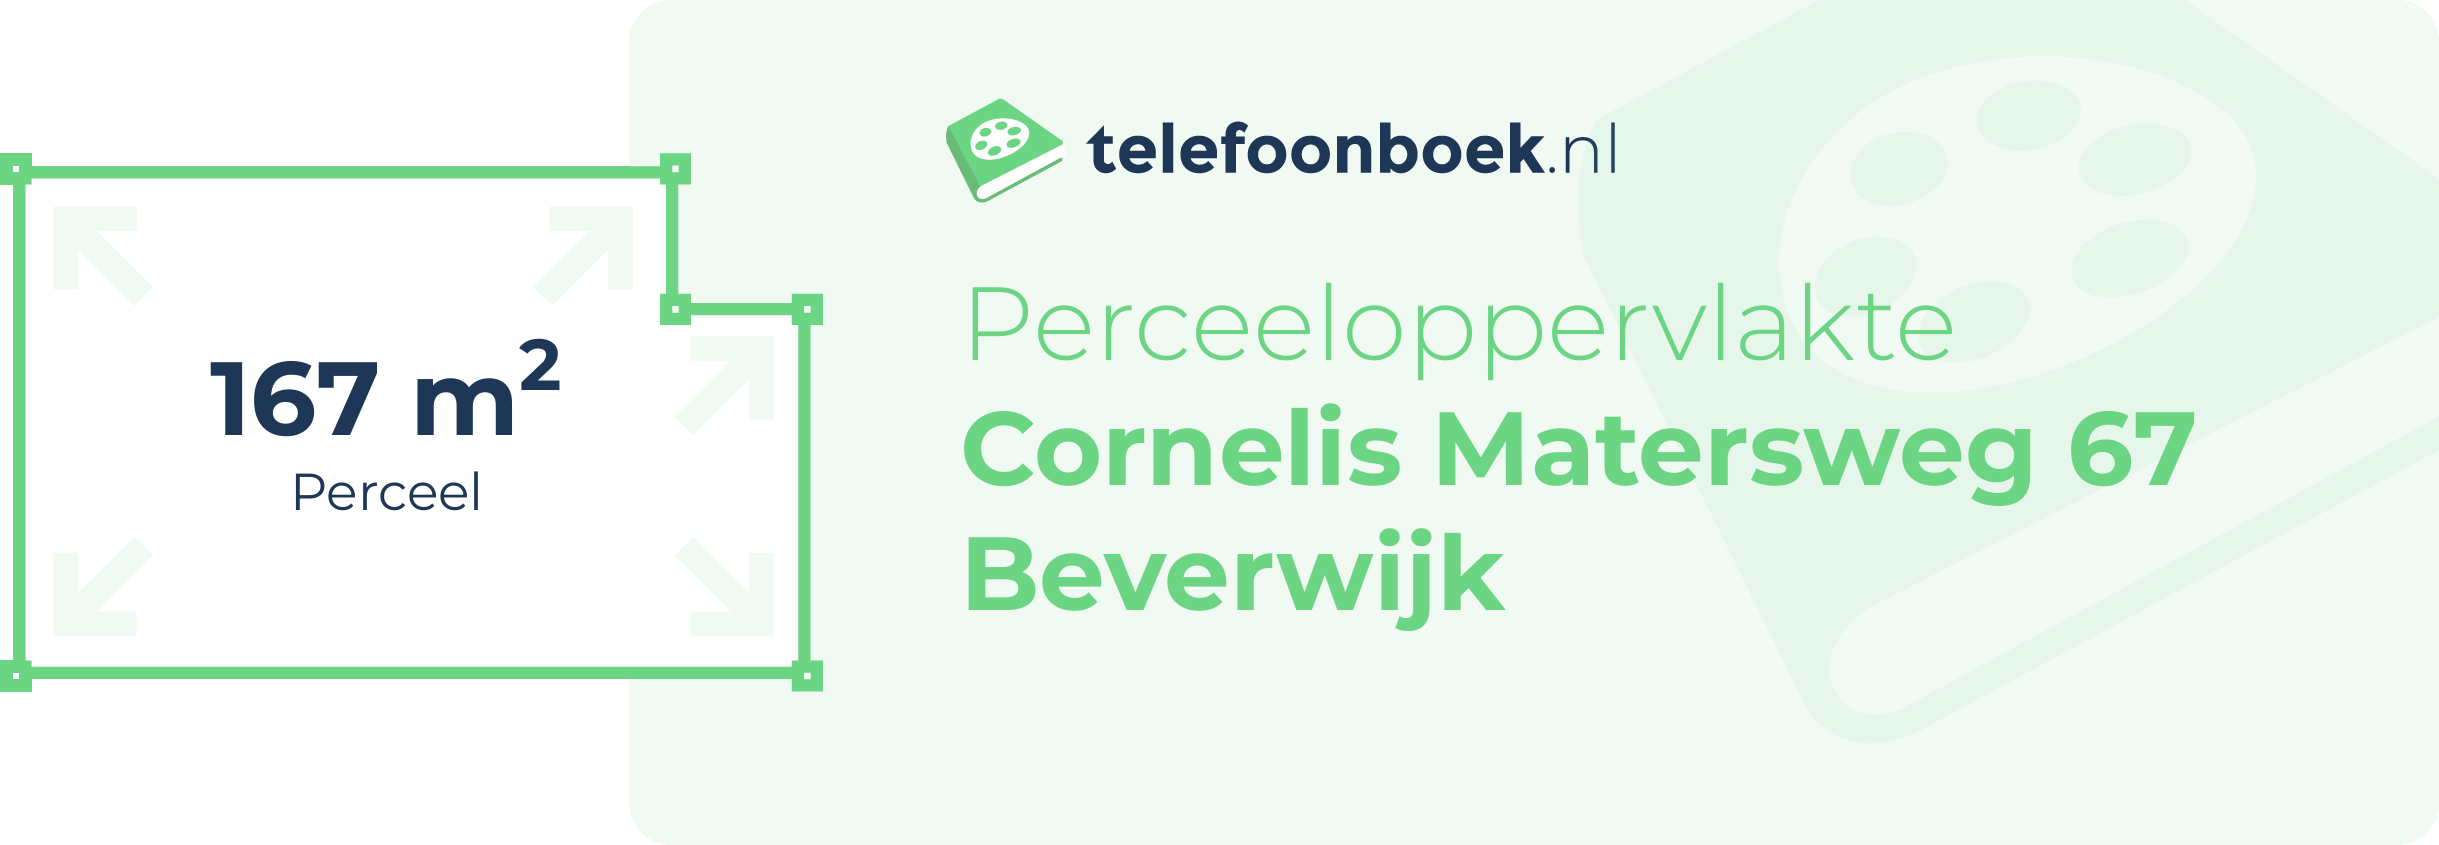 Perceeloppervlakte Cornelis Matersweg 67 Beverwijk